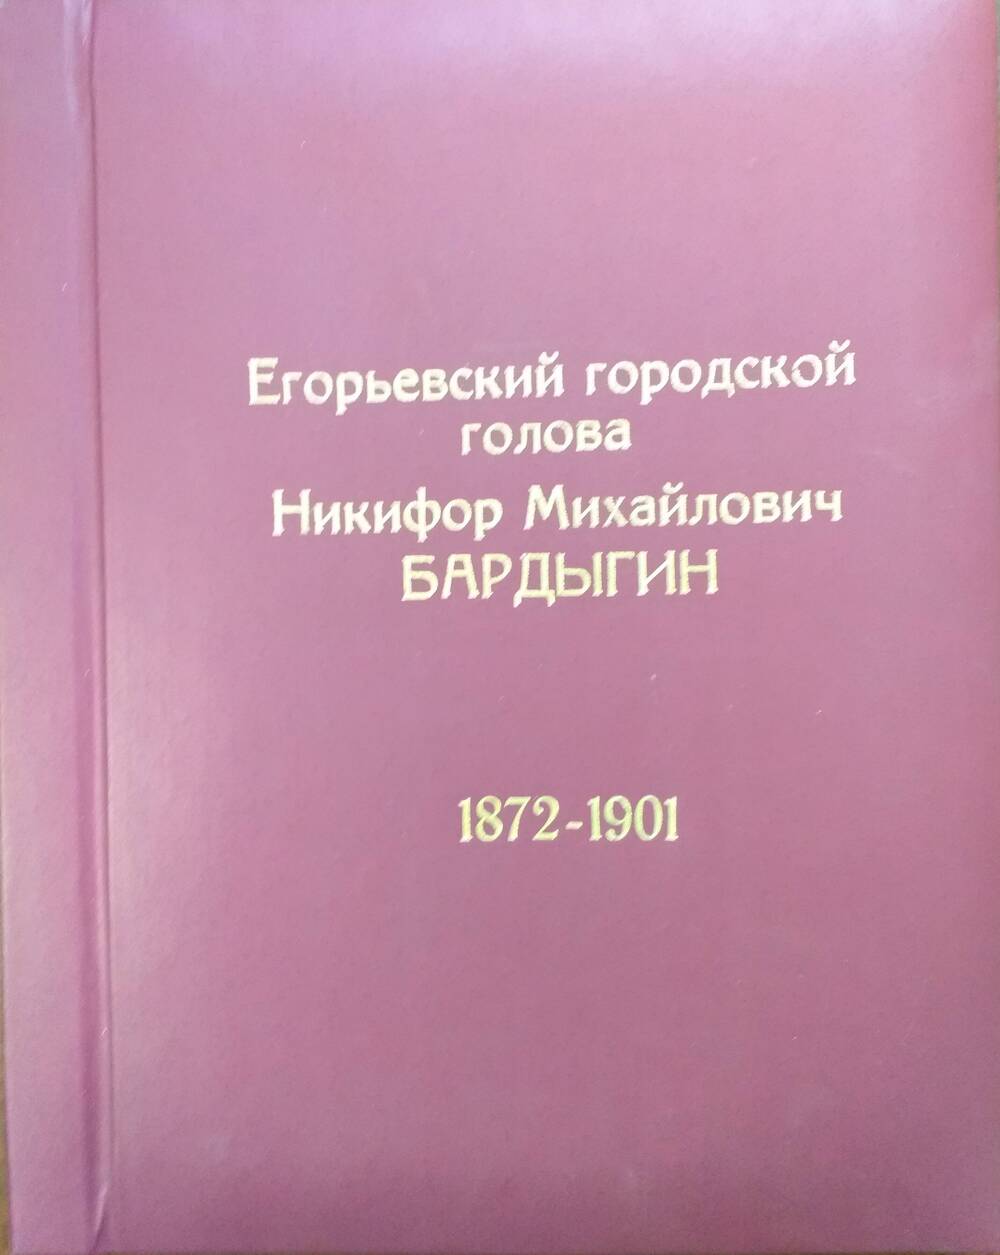 Книга. Егорьевский городской голова Никифор Михайлович Бардыгин 1872 - 1901 гг., 1994 год.